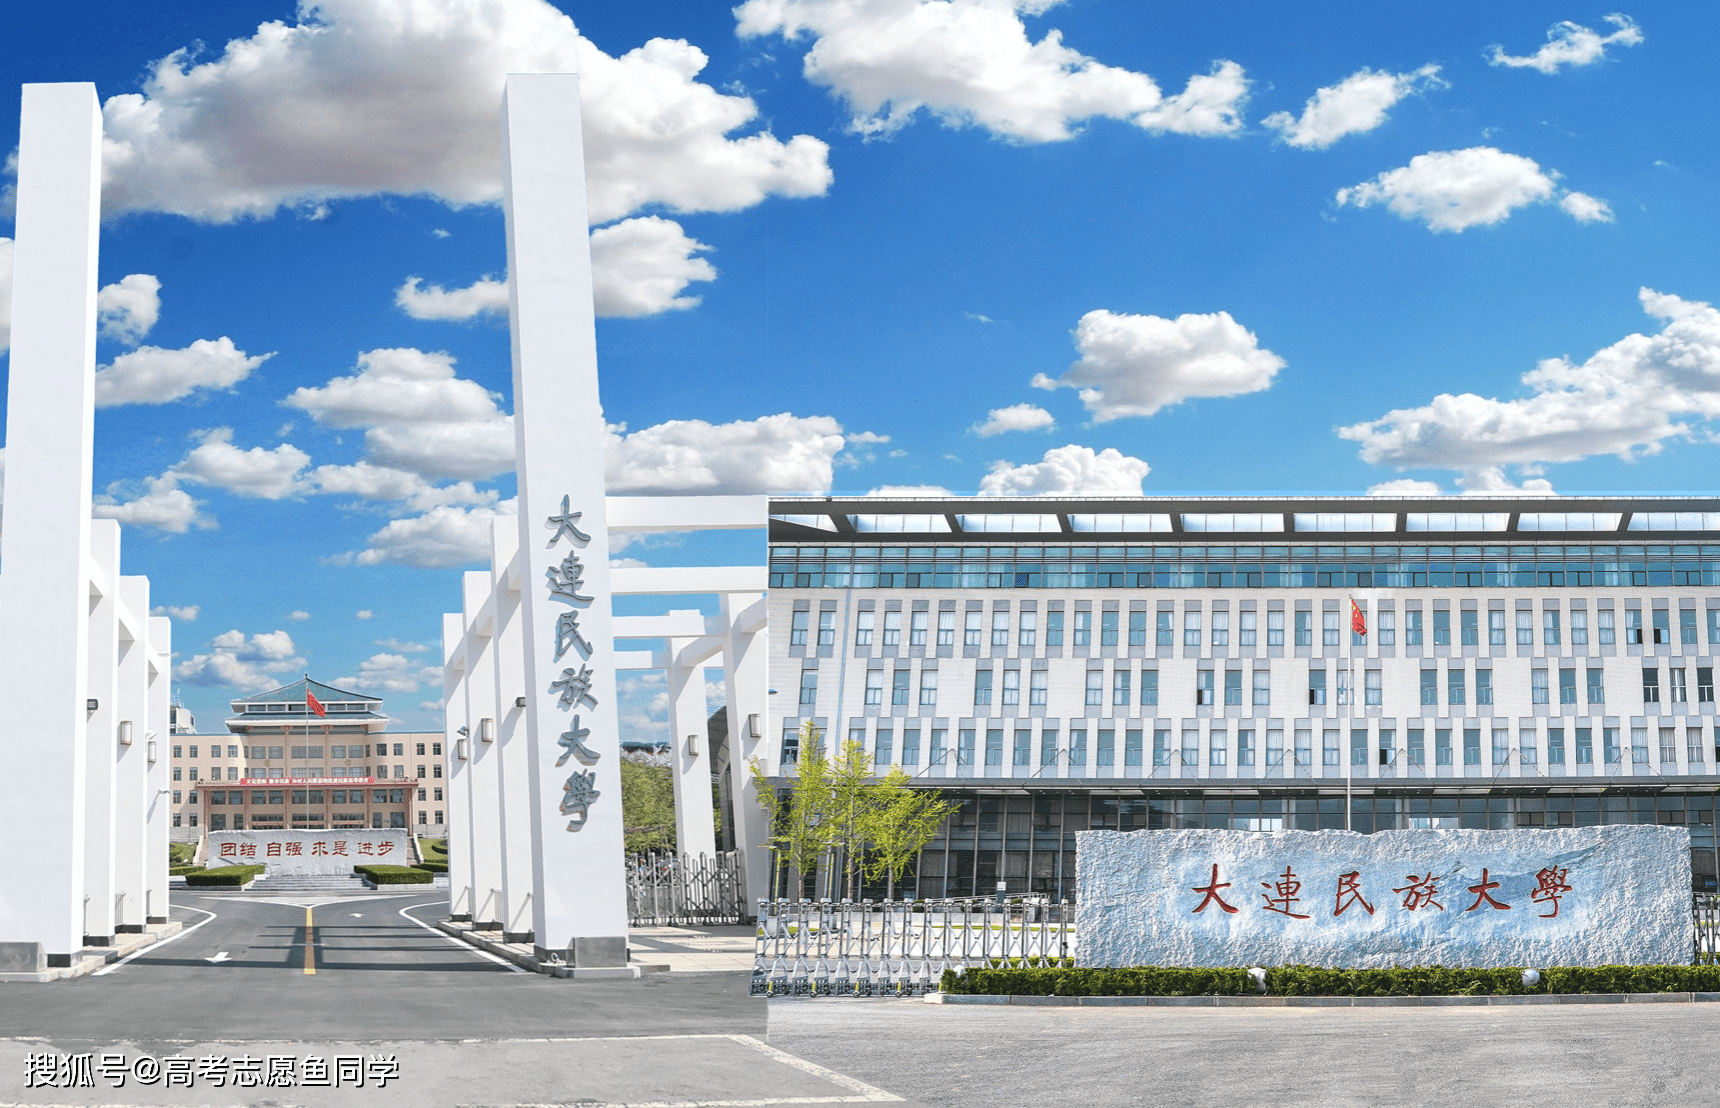 7,大连民族大学:位于辽宁大连市,是国家唯一设在东北和沿海开放地区且